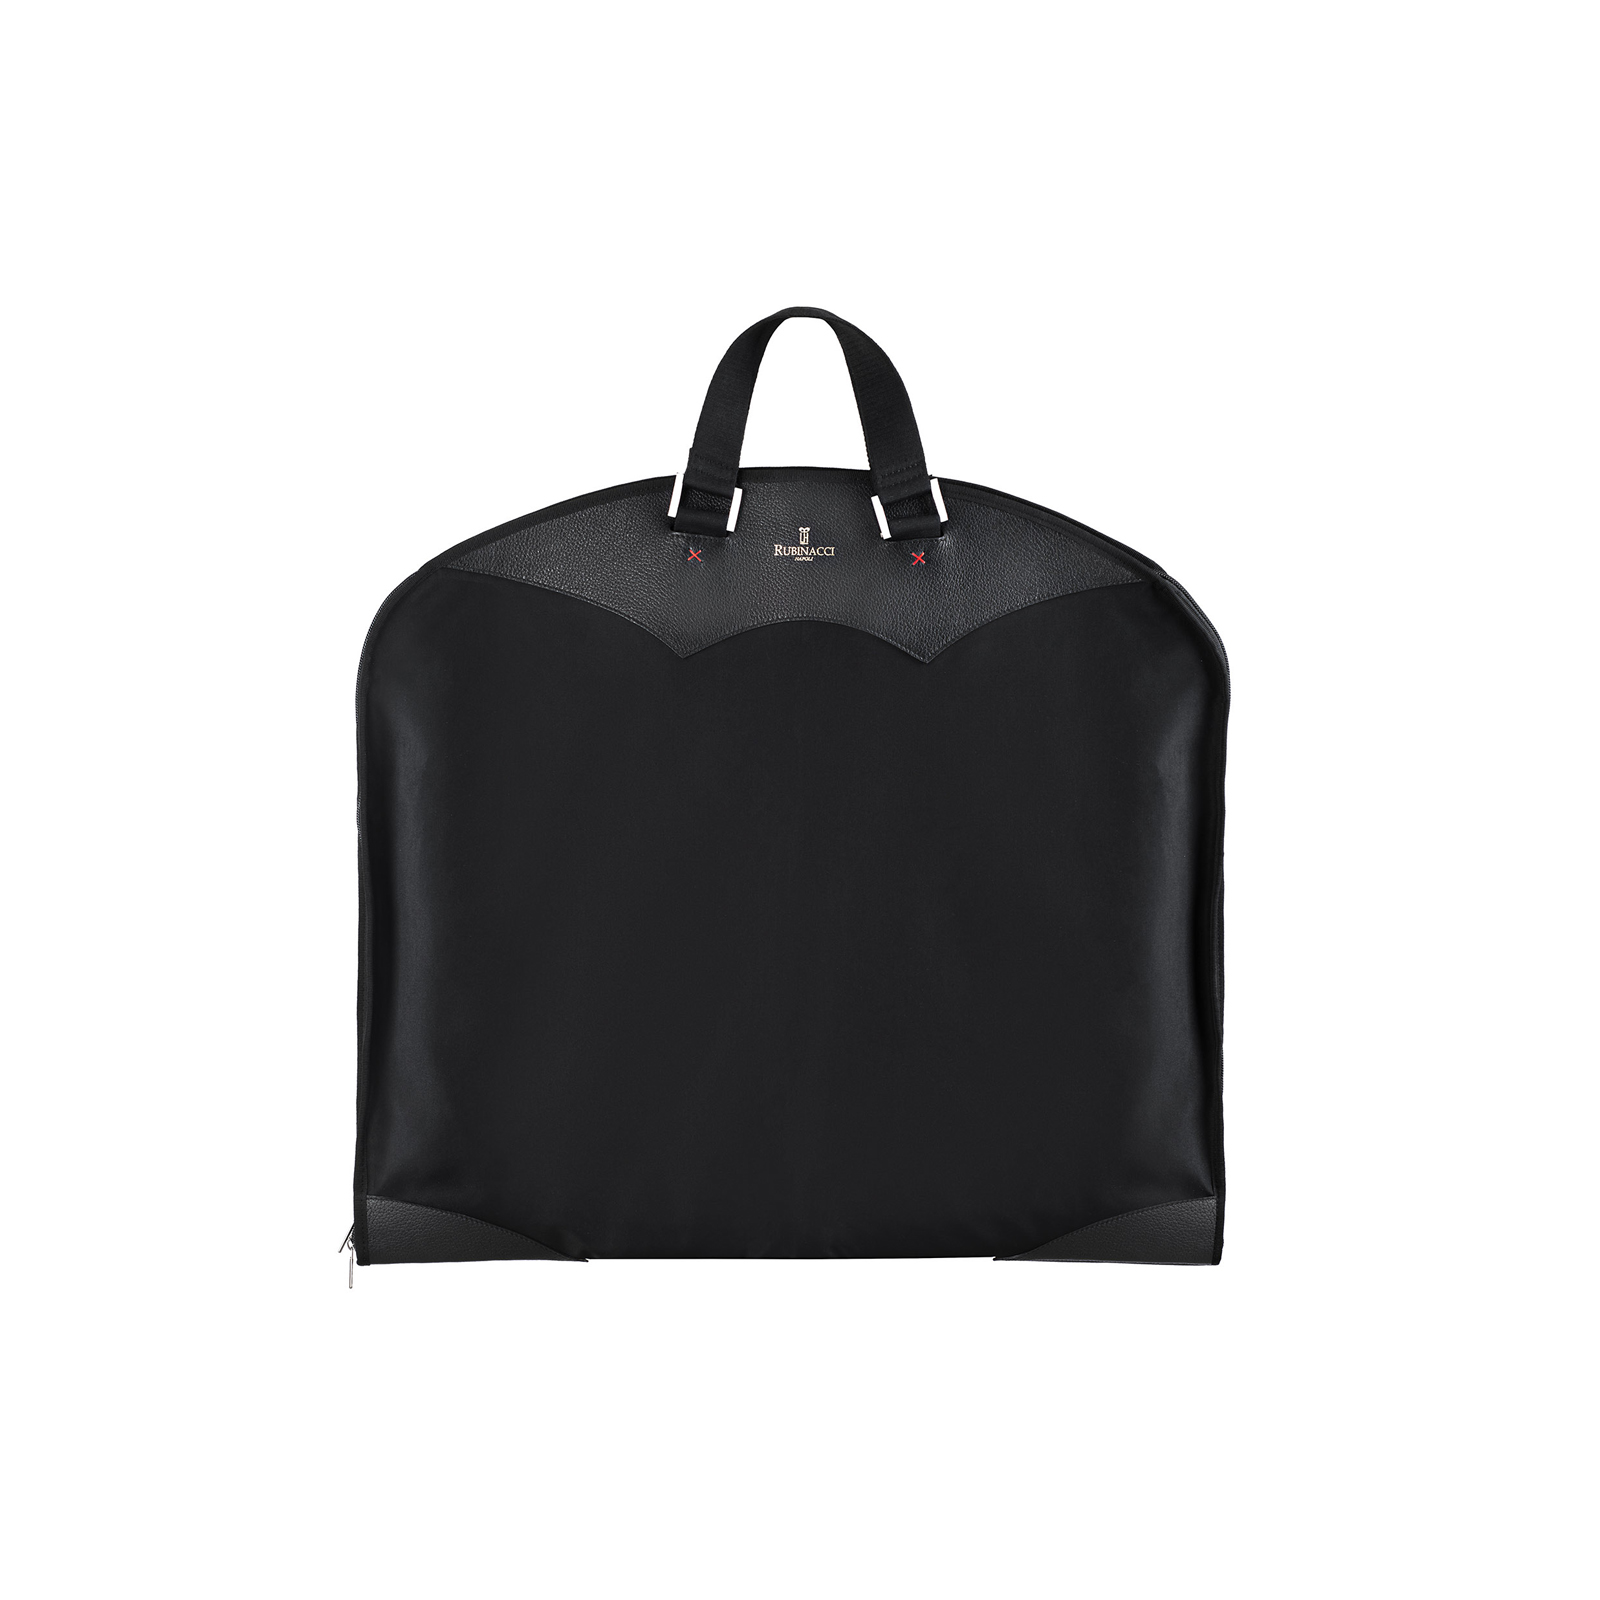 Louis Vuitton - Monogram Canvas Suit Carrier Garment Bag